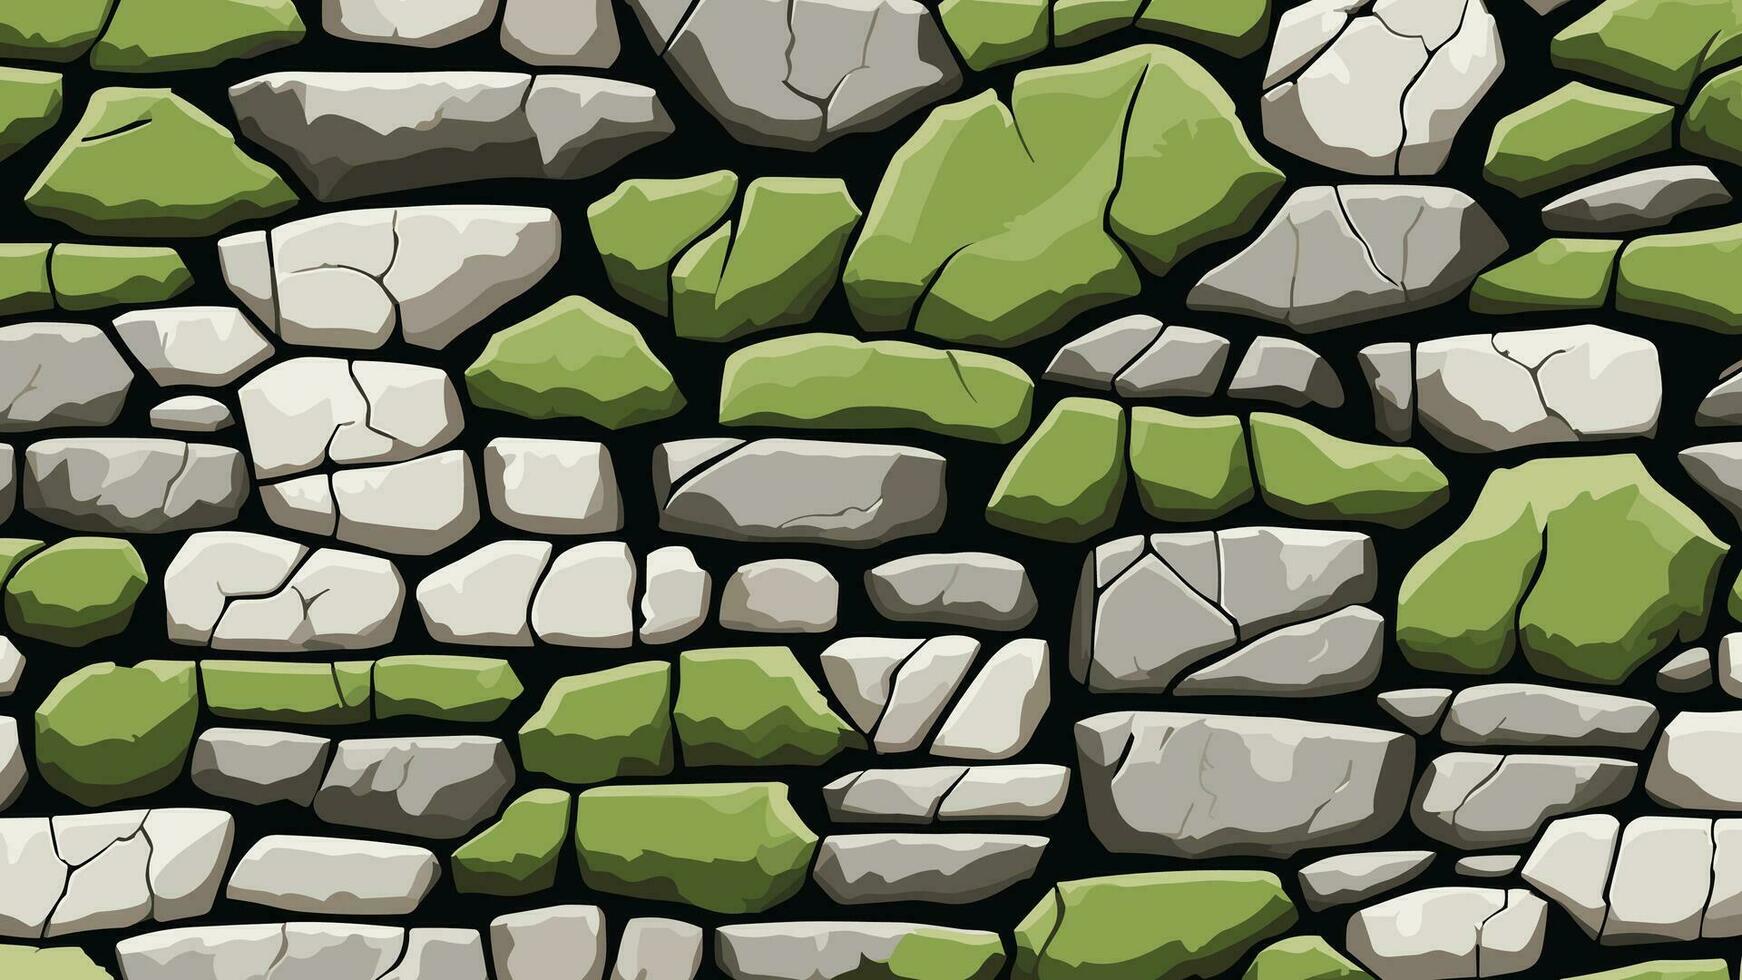 sten vägg med spricka och mossa textur för bakgrund och tapet vektor